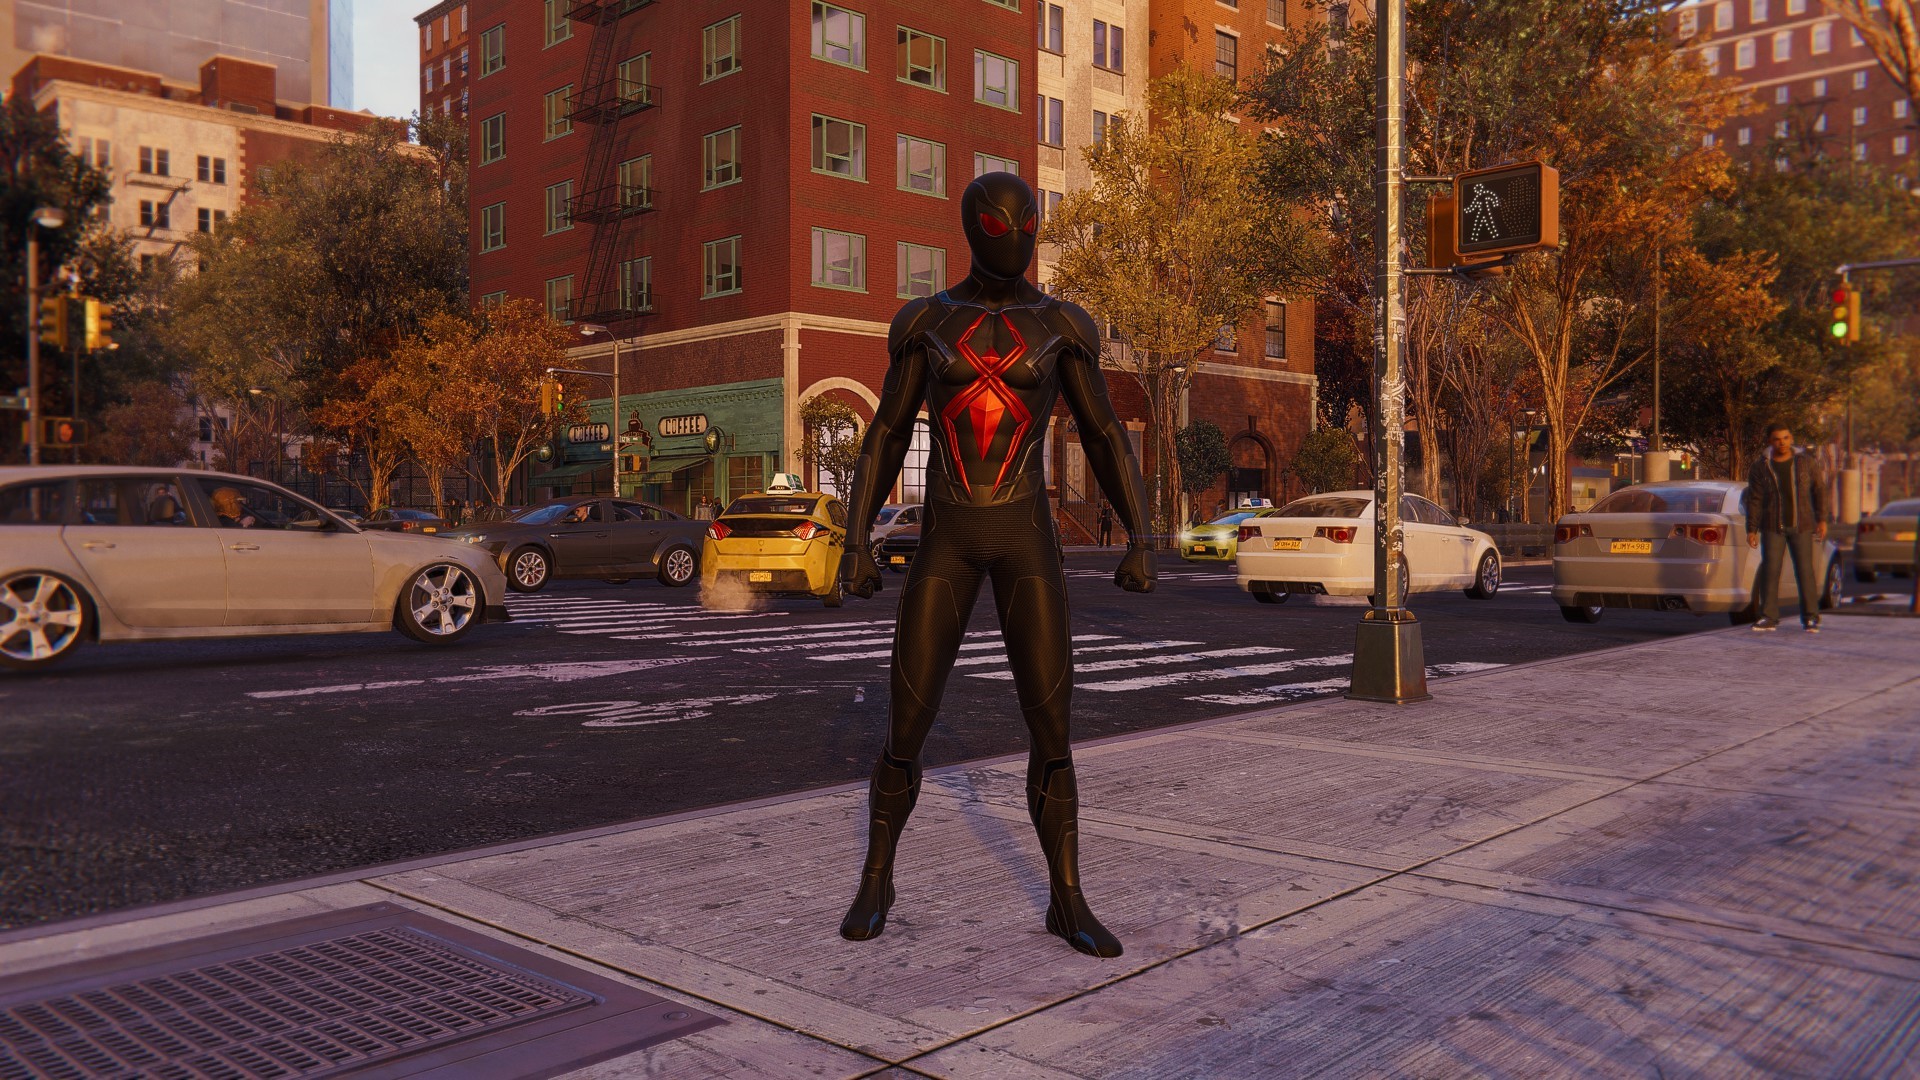 Темный костюм Человека-паука — полностью черный костюм с большим красным пауком на туловище.